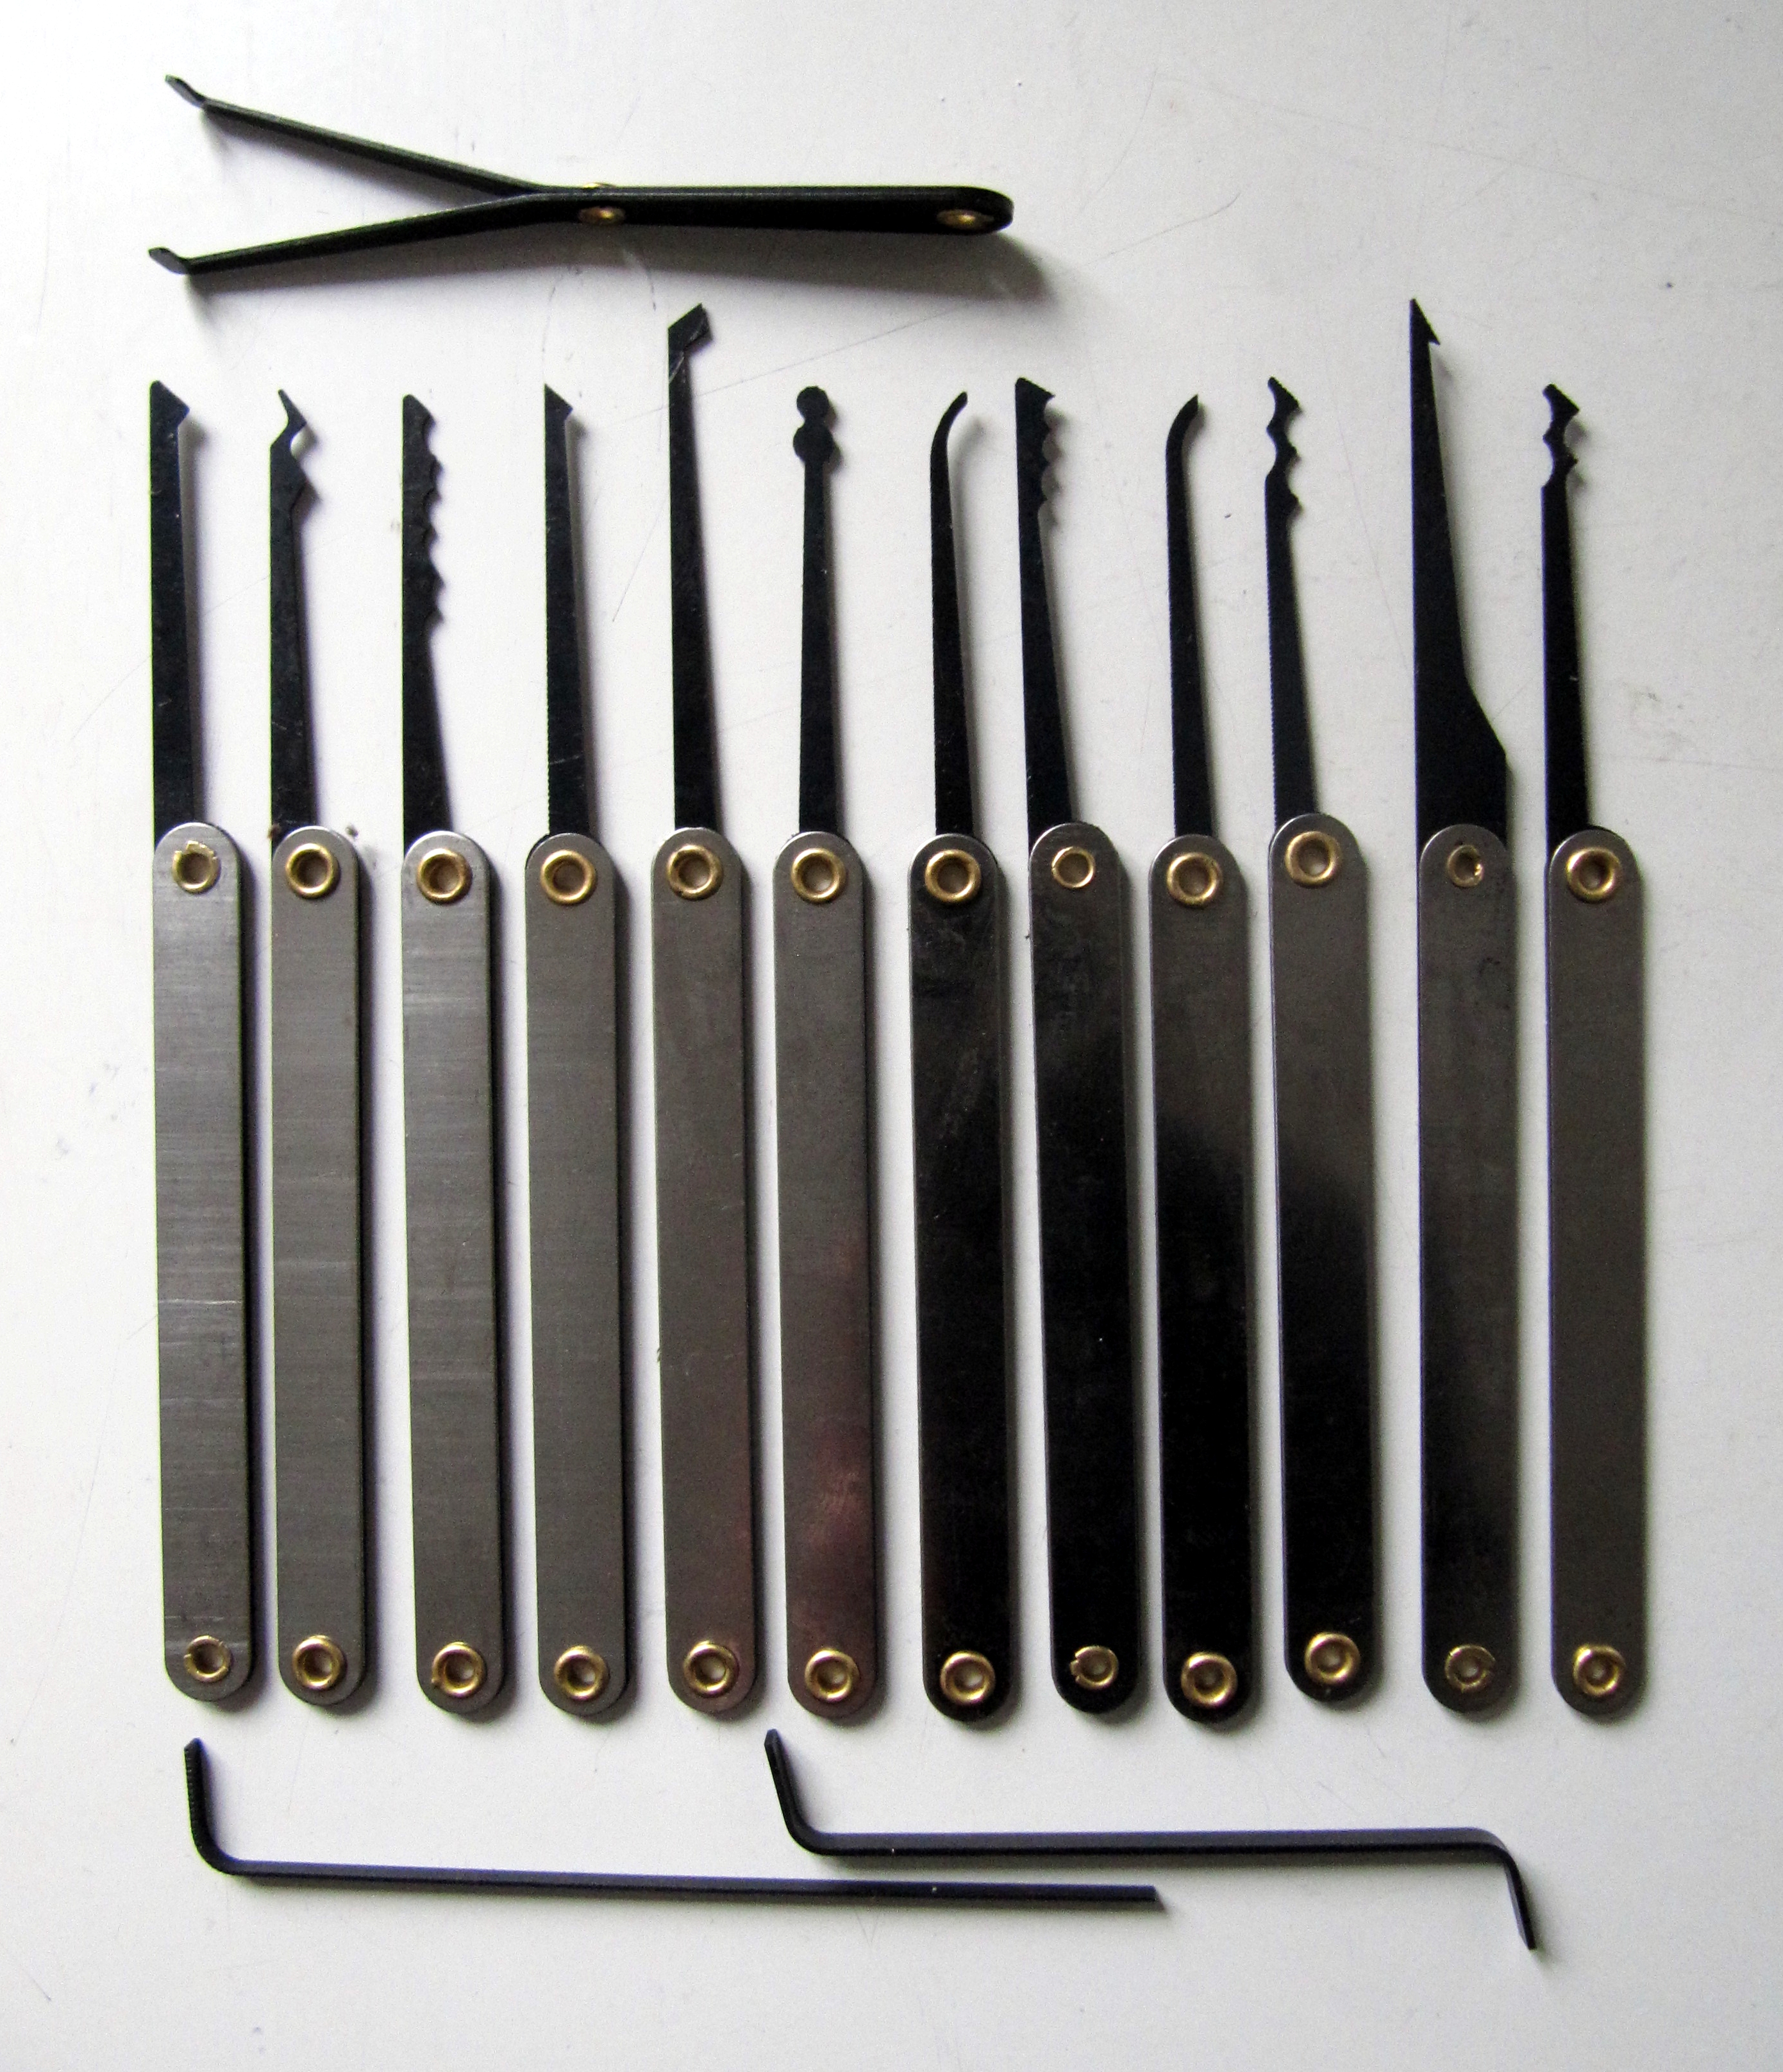 9 Popular tools used in lockpicking 187116 - 9 Popular tools used in lockpicking